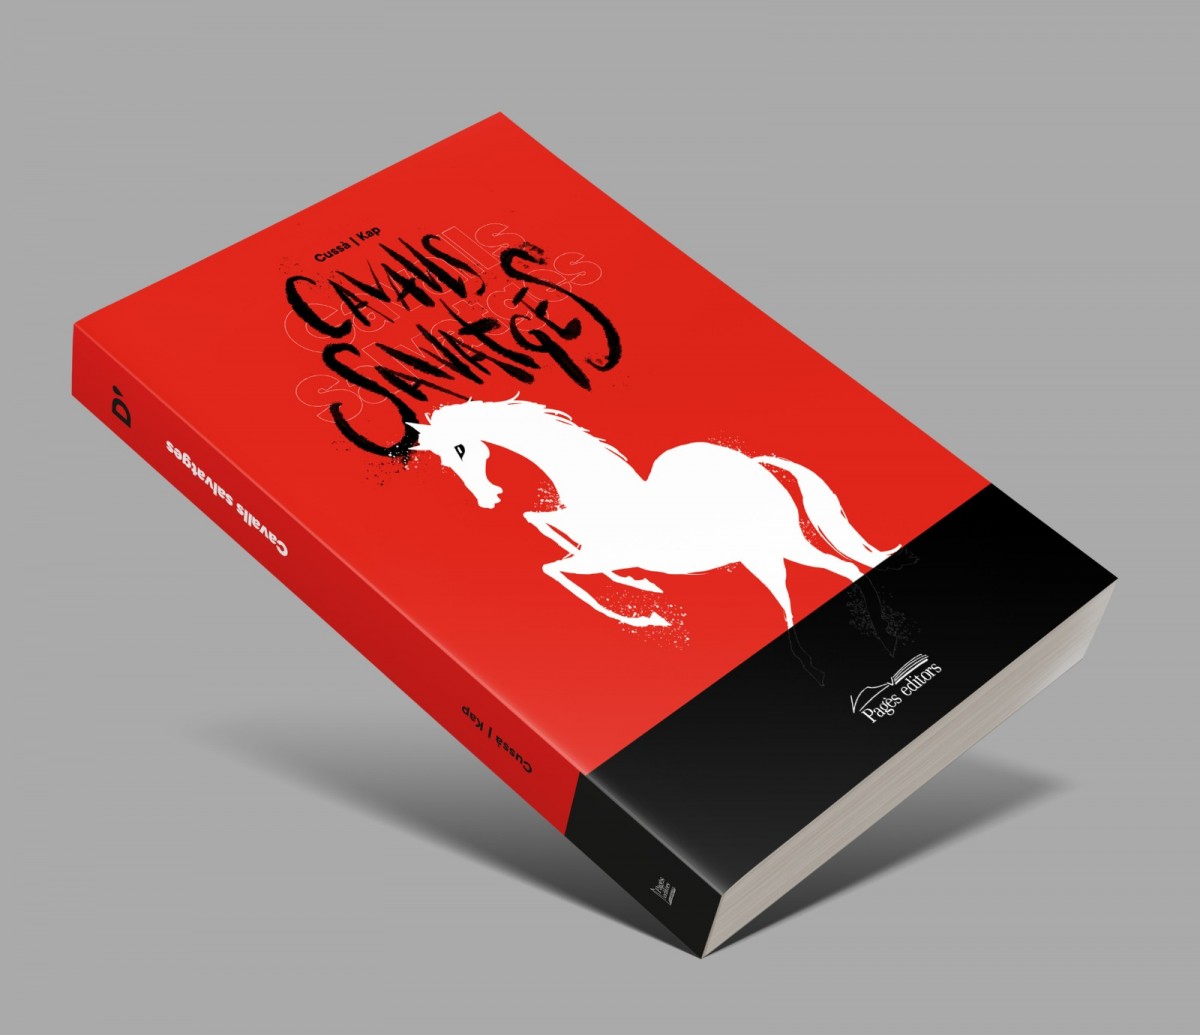 Cavalls salvatges, de Jordi Cussà i Jaume Capdevila